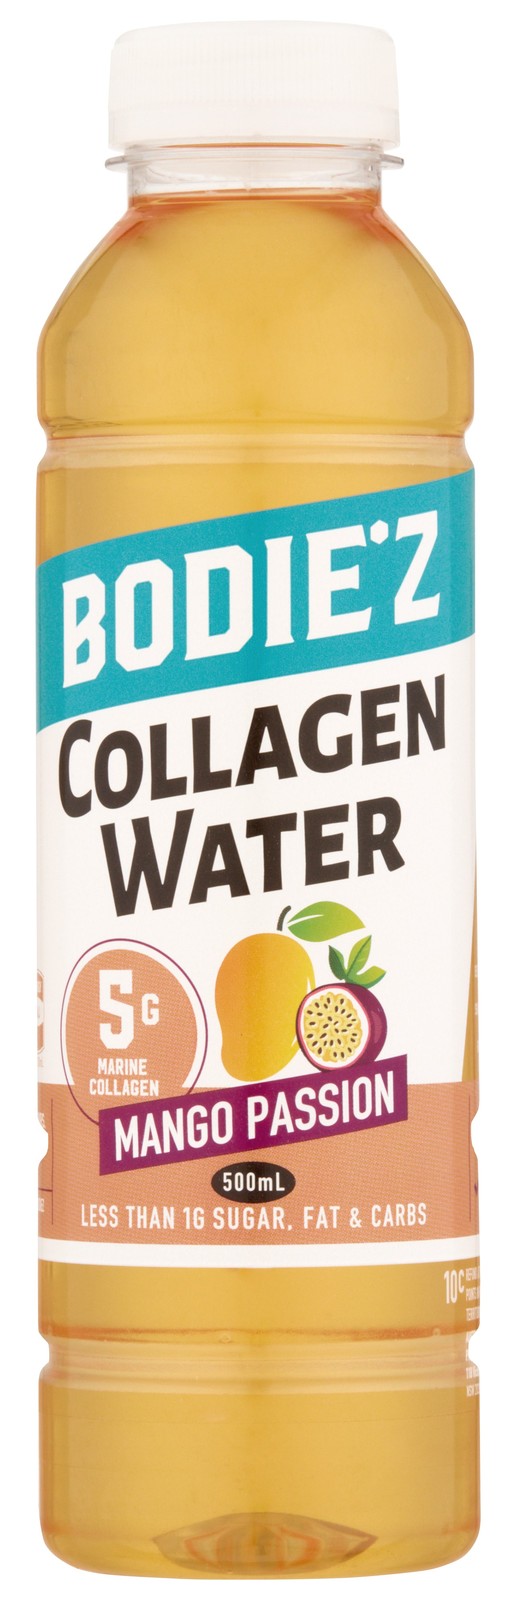 Bodie'z Collagen Water - Mango Passion (500ml) x 6